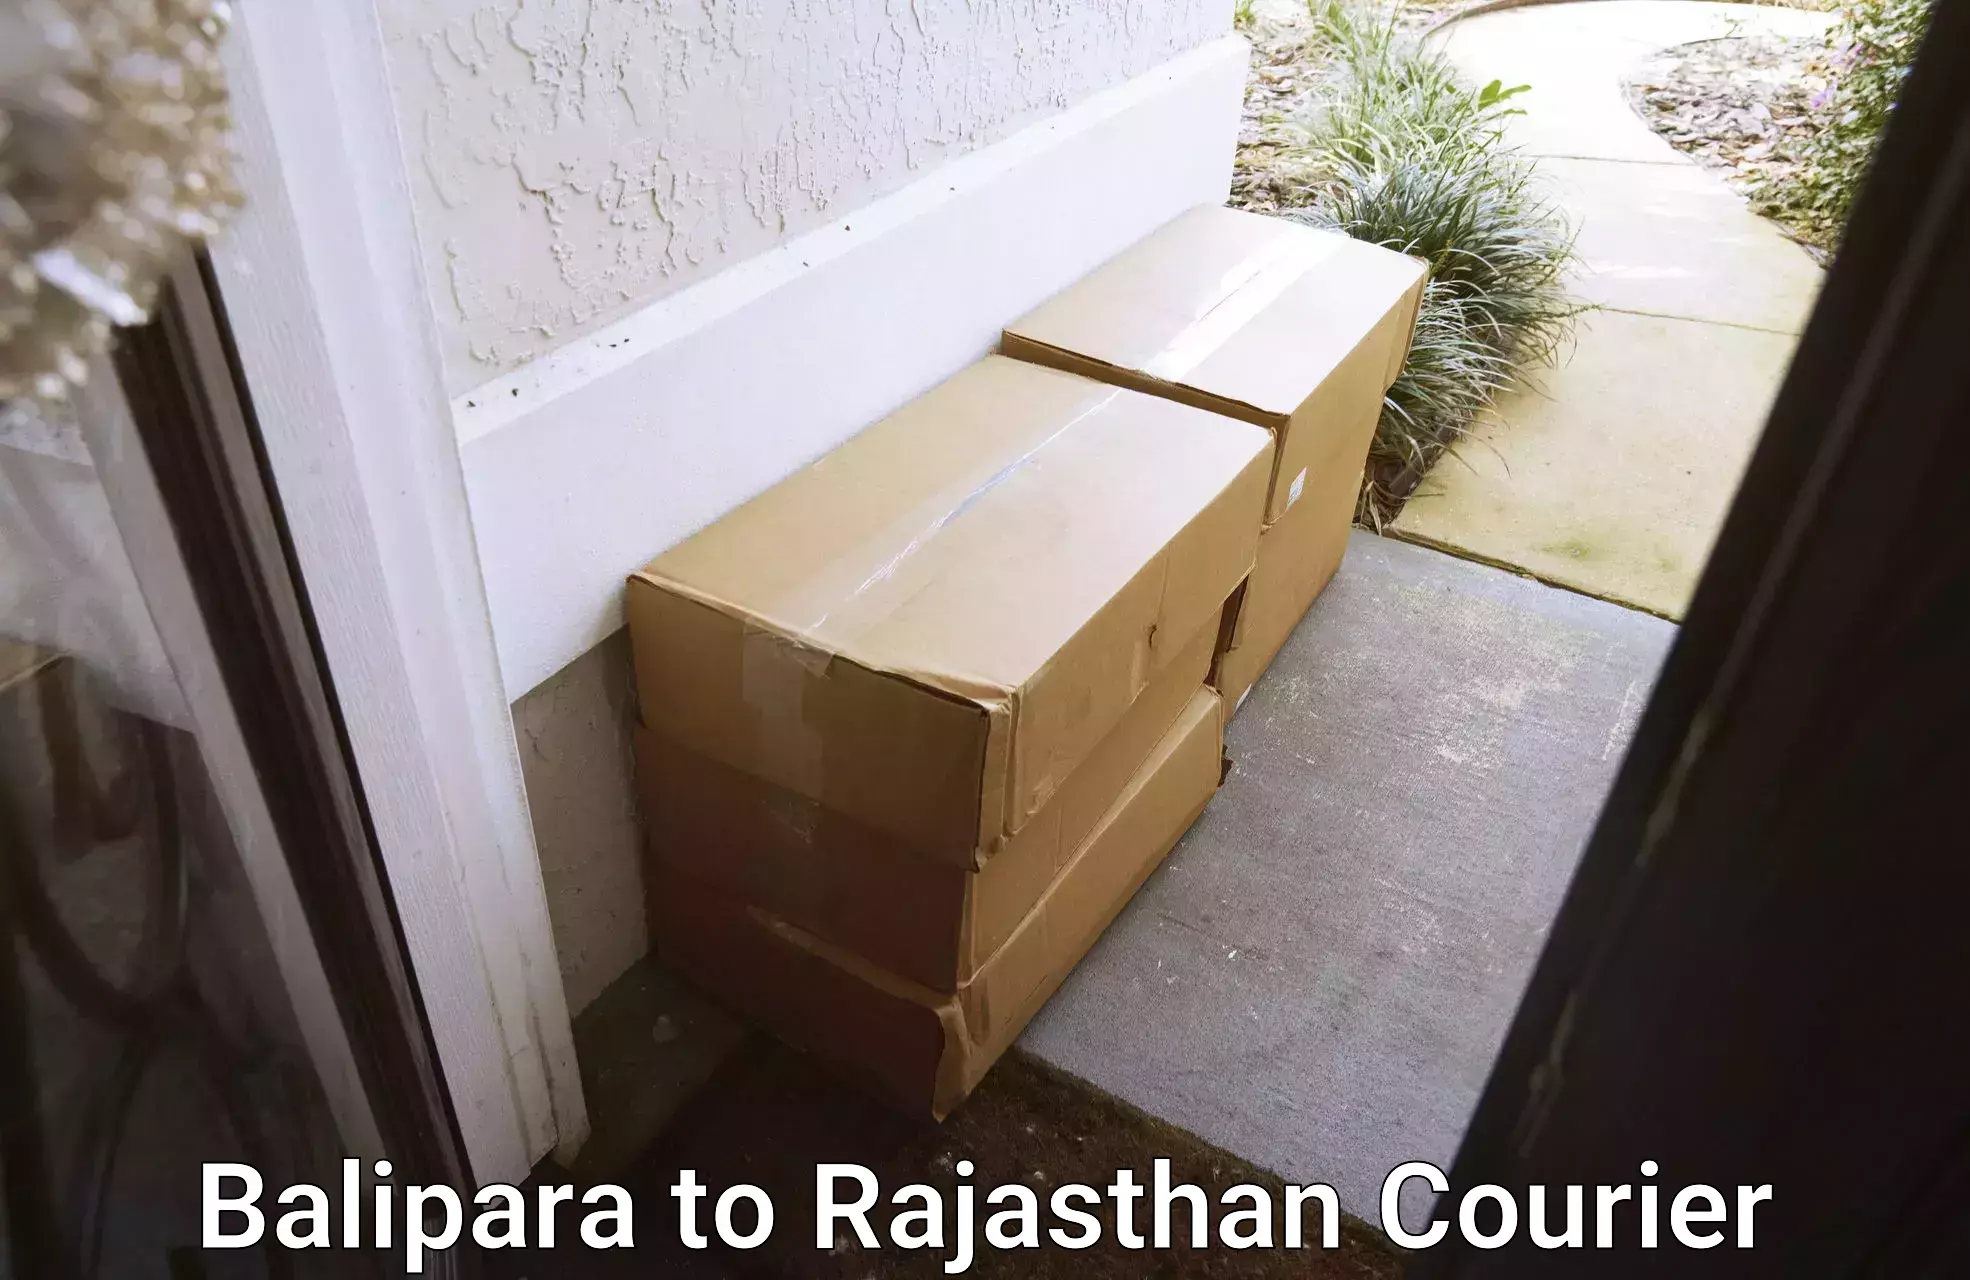 Professional courier handling Balipara to Simalwara